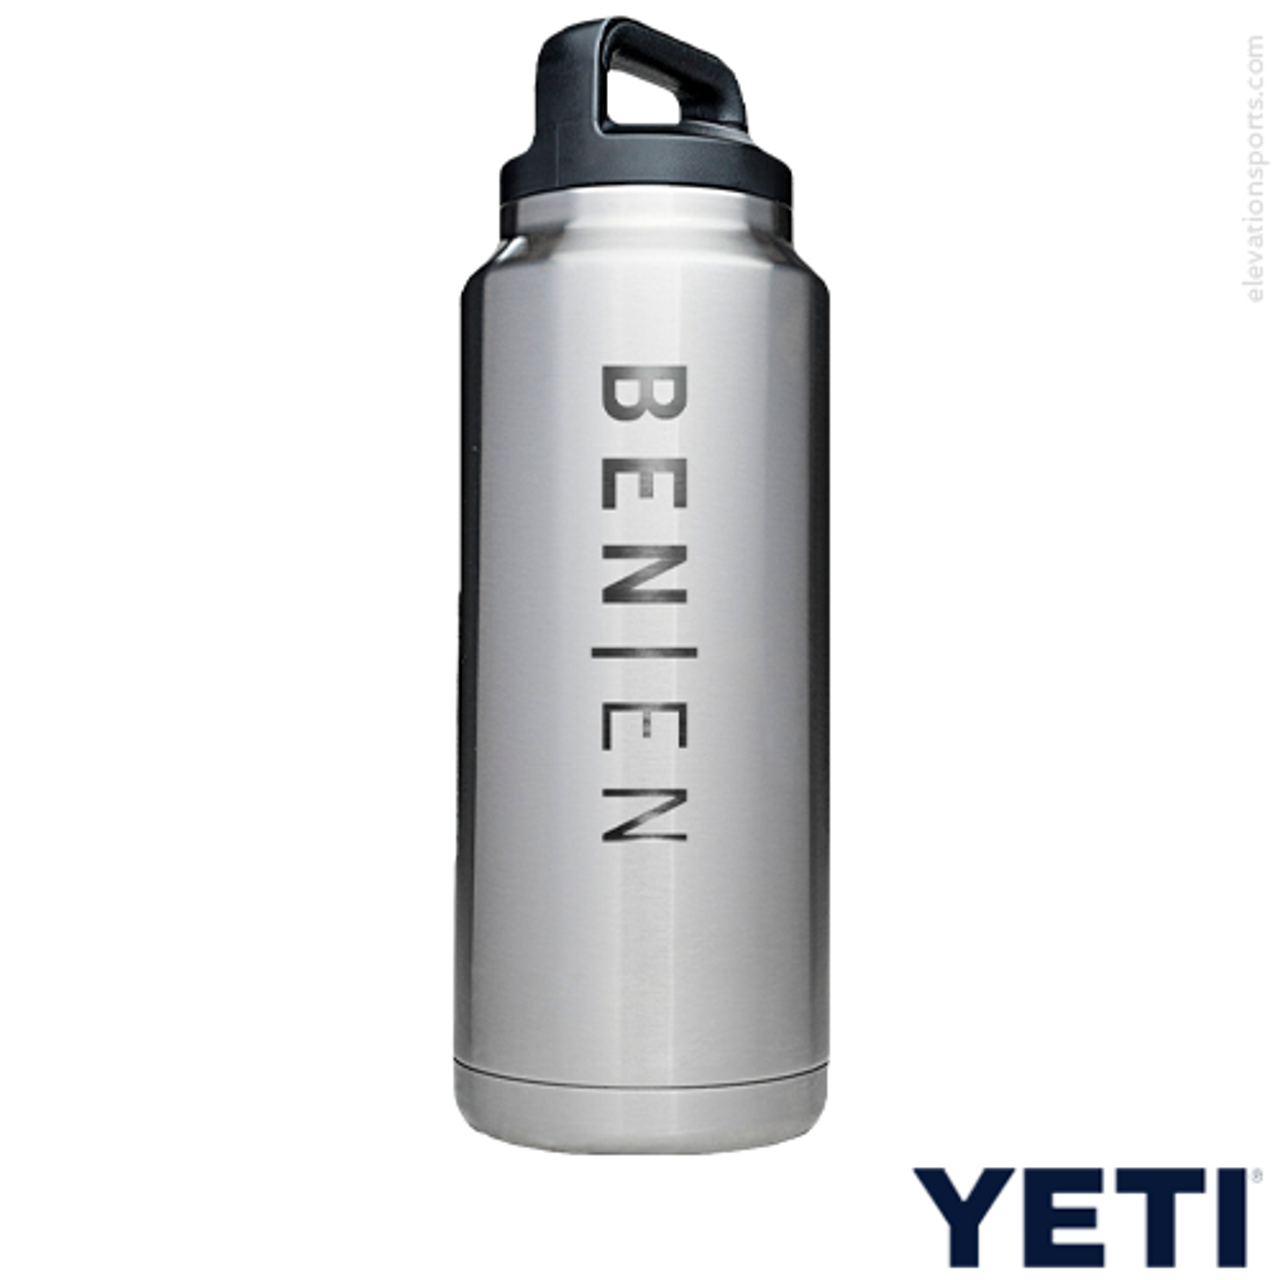 Strut Commander YETI Water Bottle